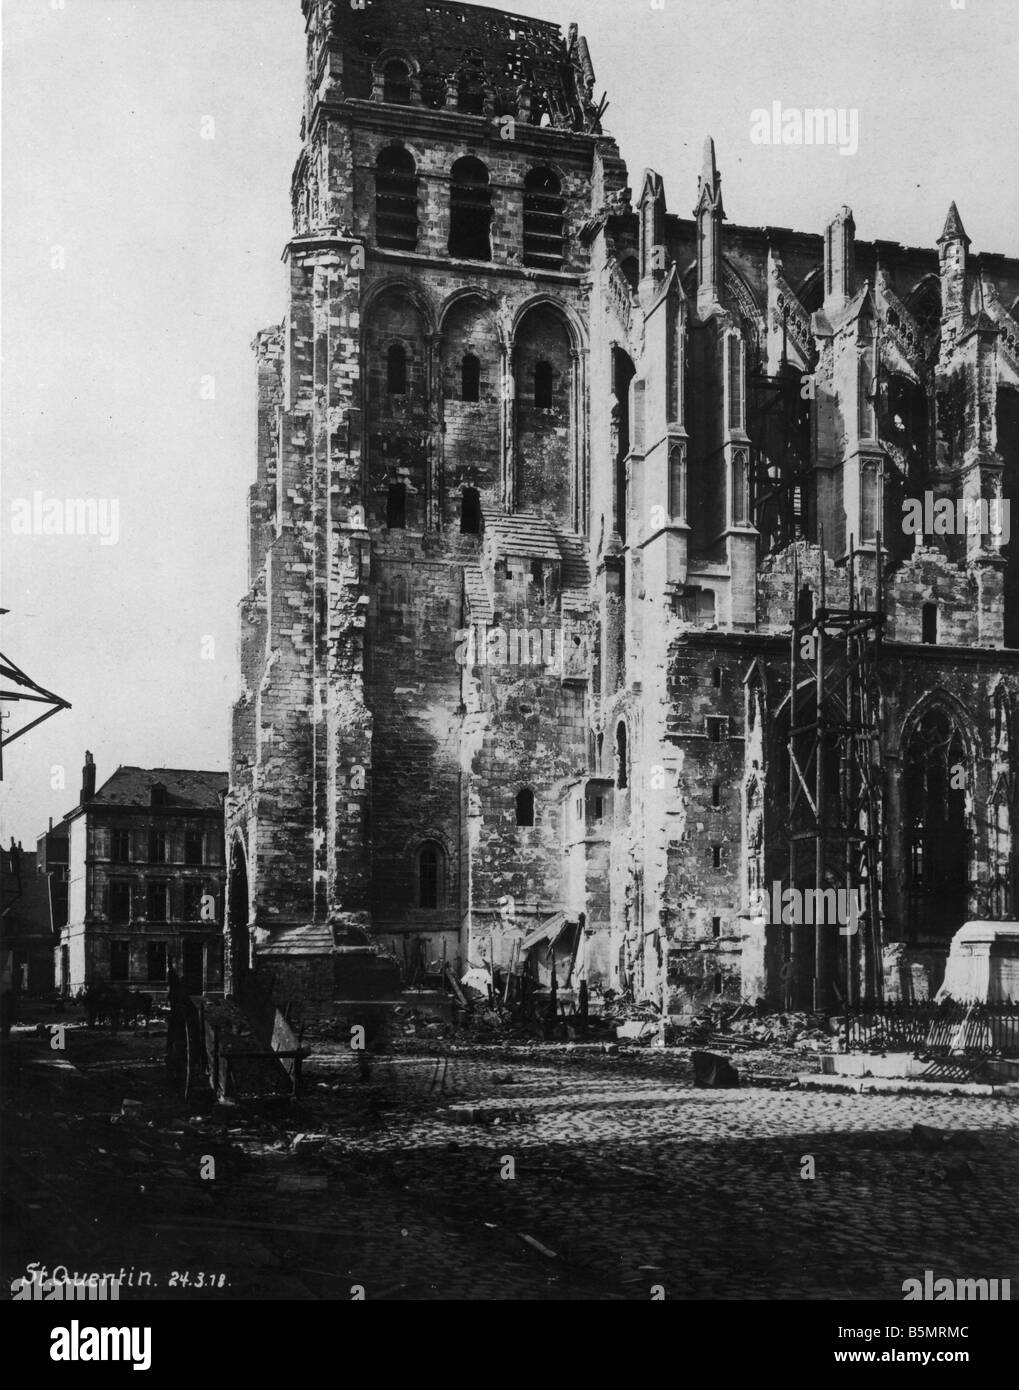 9 1918 324 A1 3 l'église Saint Quentin 1918 déchirés par la Seconde Guerre mondiale, Front de l'Ouest 1 mars grande offensive allemande Juillet 1918 Capture de S Banque D'Images